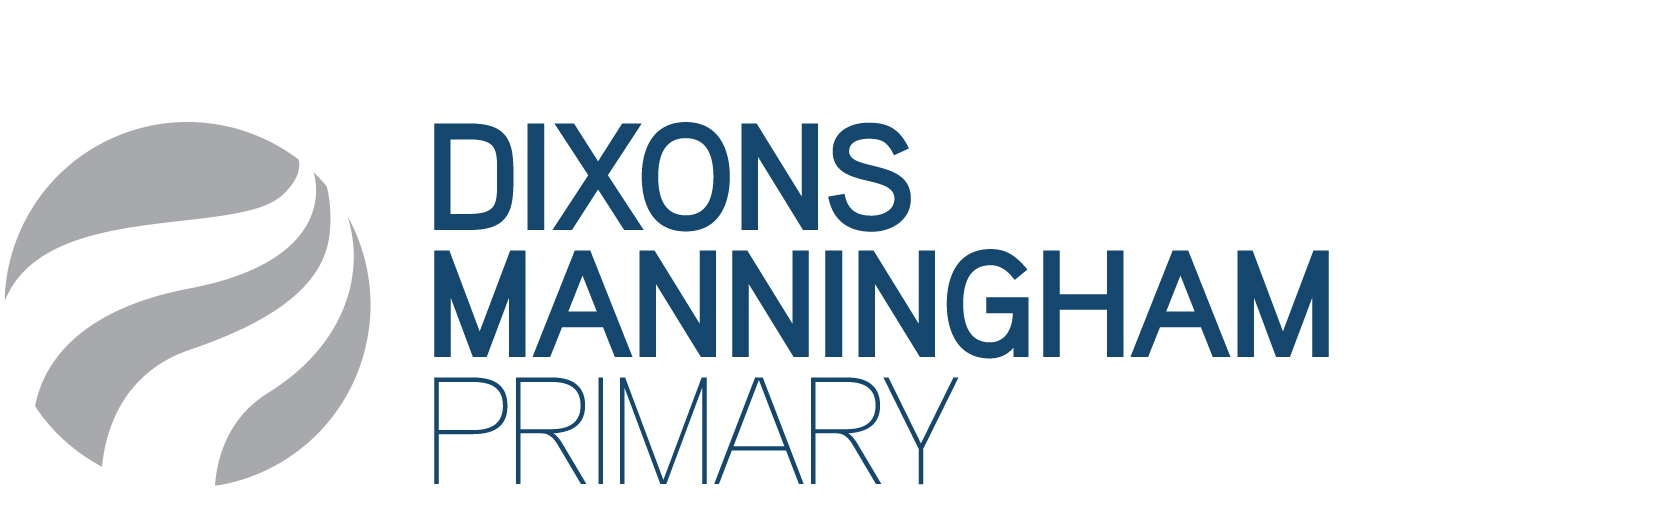 Dixons Manningham Primary